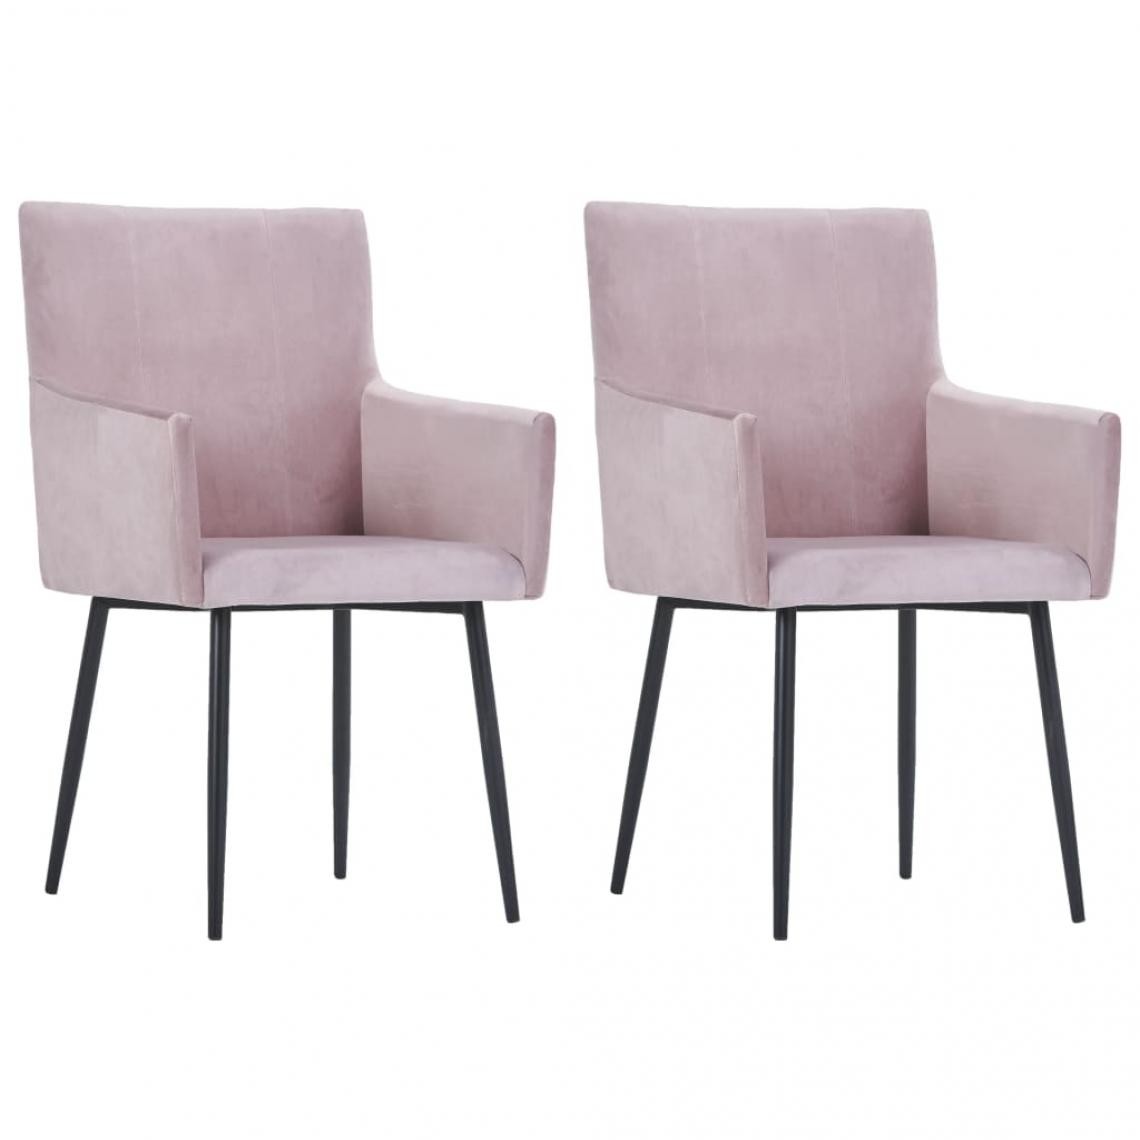 Decoshop26 - Lot de 2 chaises de salle à manger cuisine avec accoudoirs design moderne velours rose CDS020146 - Chaises